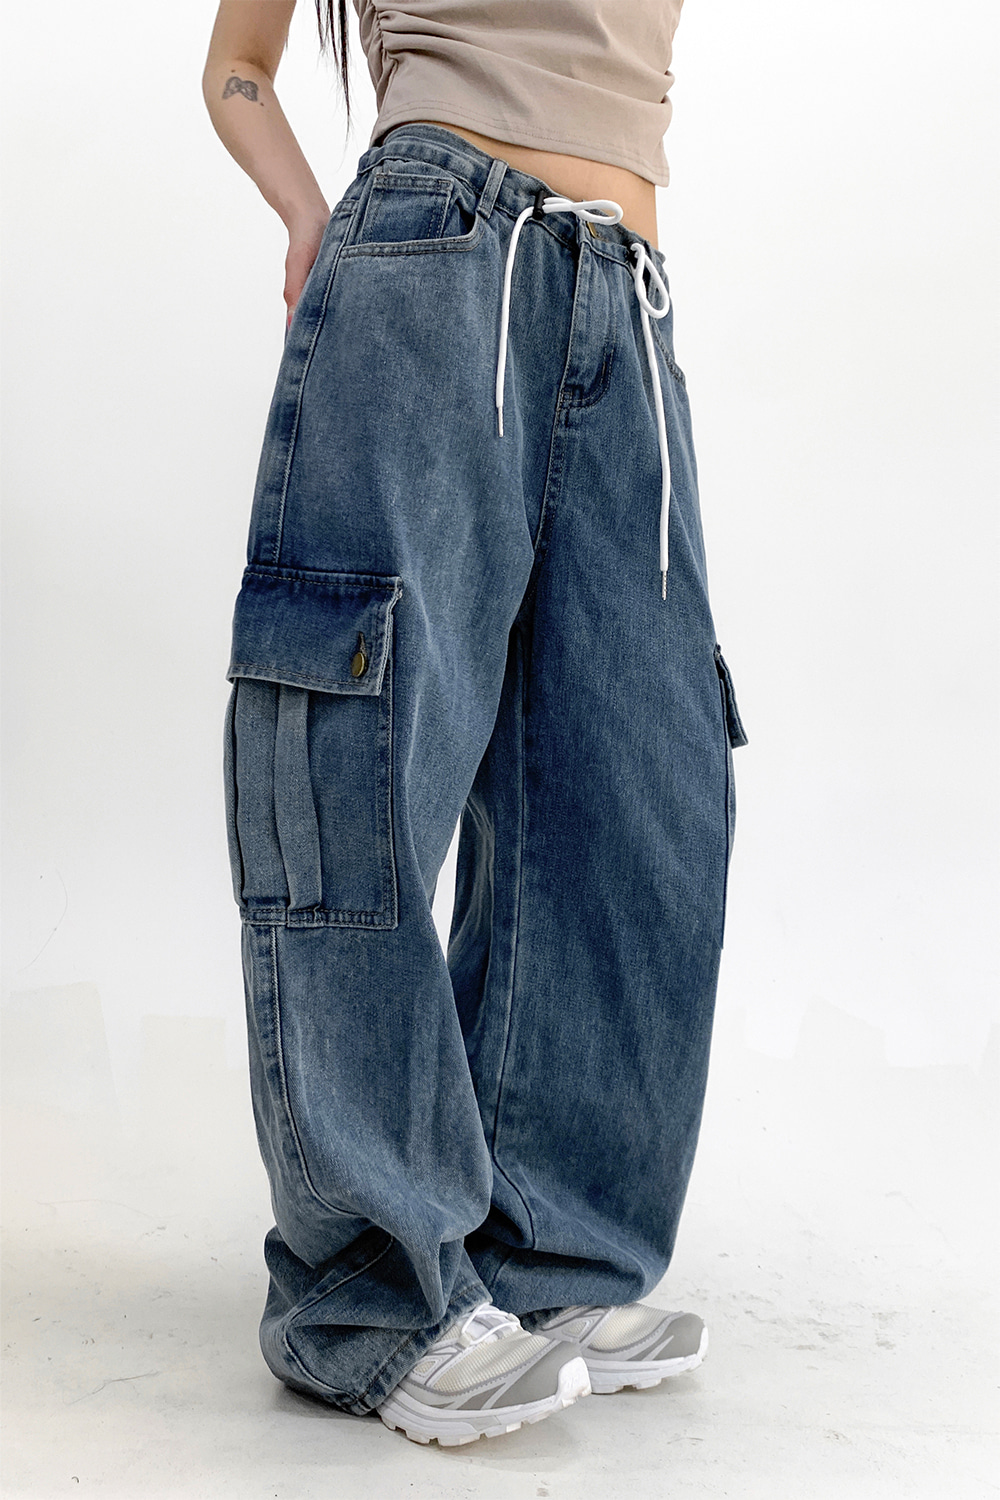 homies vintage string cargo pants